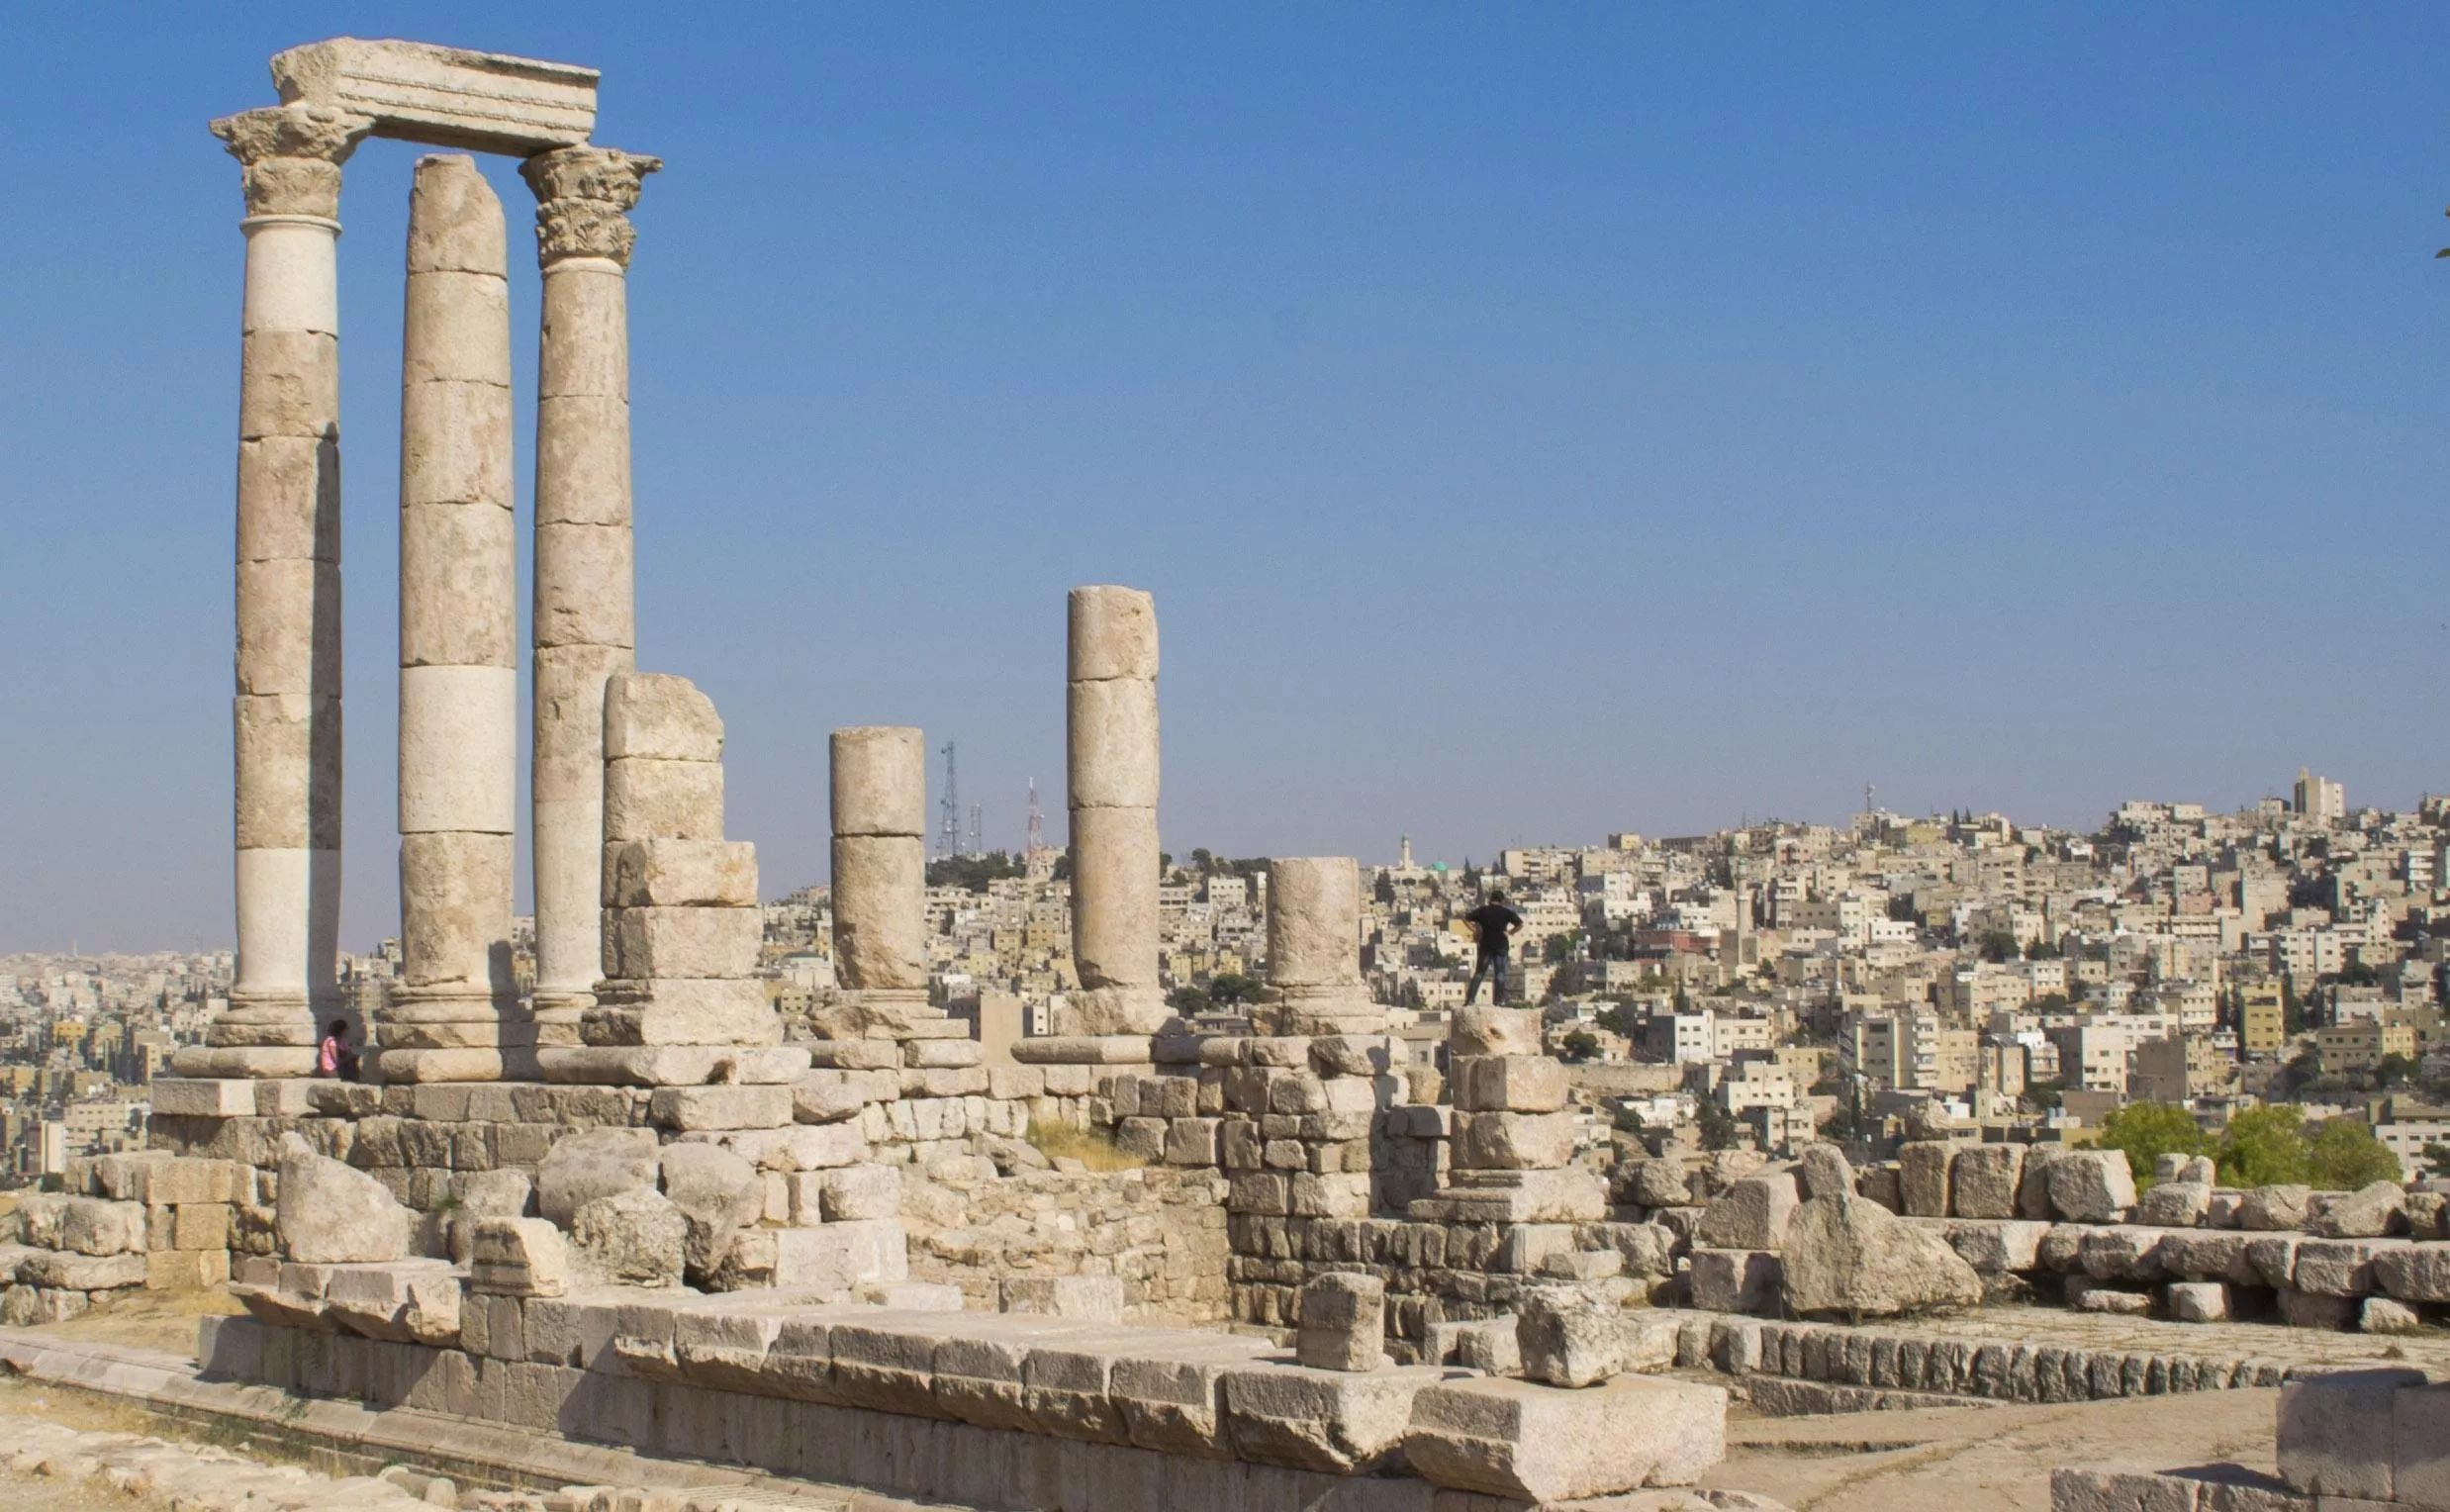 تخطّطين للسفر إلى الأردن؟ إليكِ افضل الاماكن السياحية التي يمكنكِ زيارتها فيها